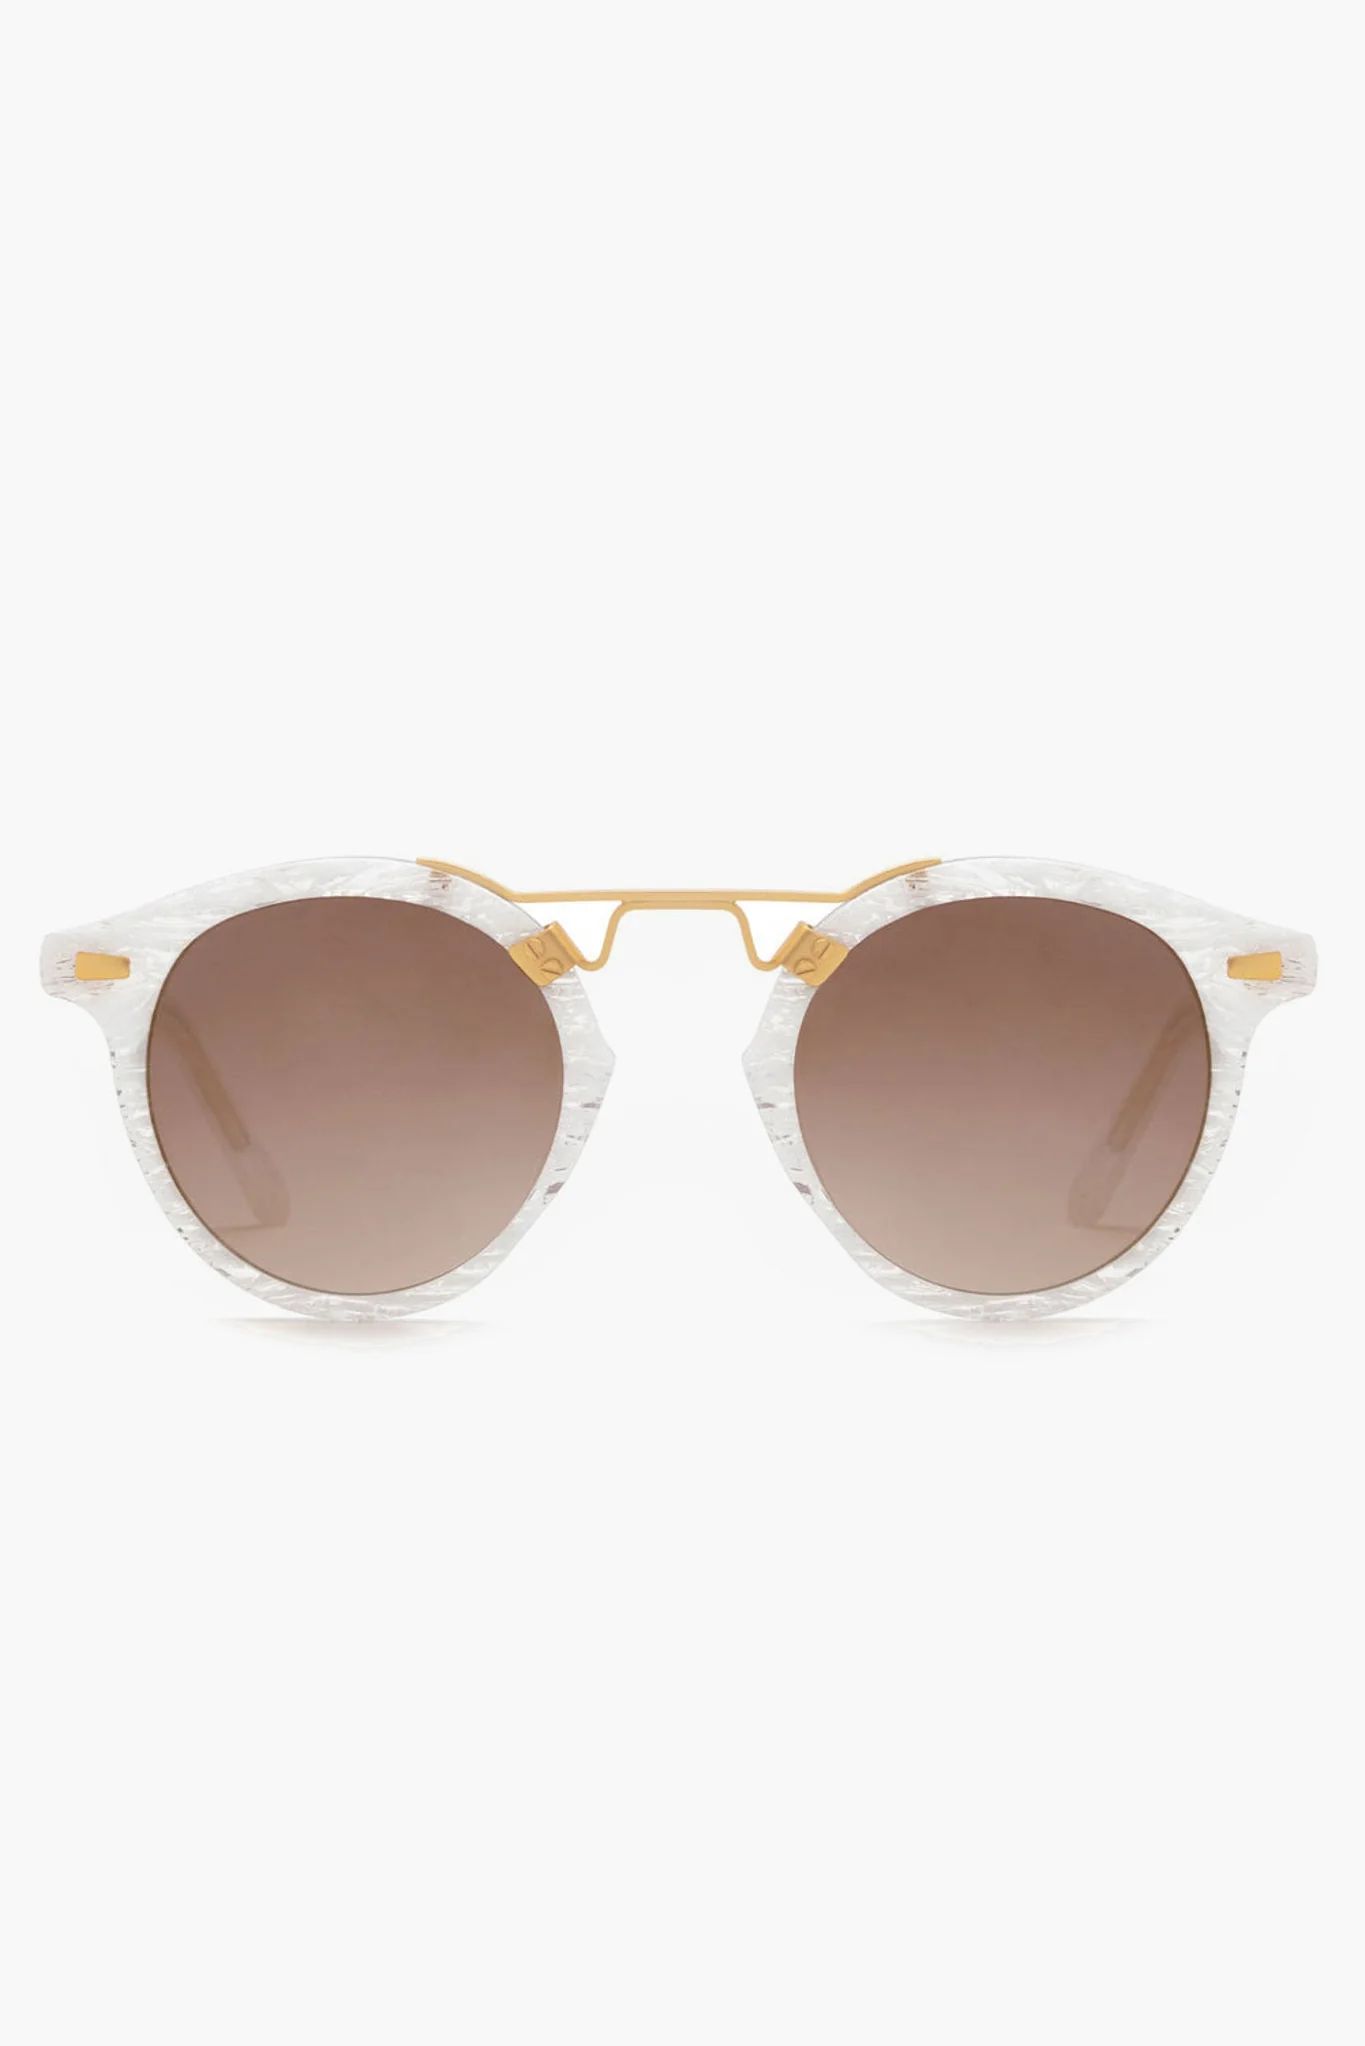 White Linen 24K St Louis Sunglasses | Tuckernuck (US)